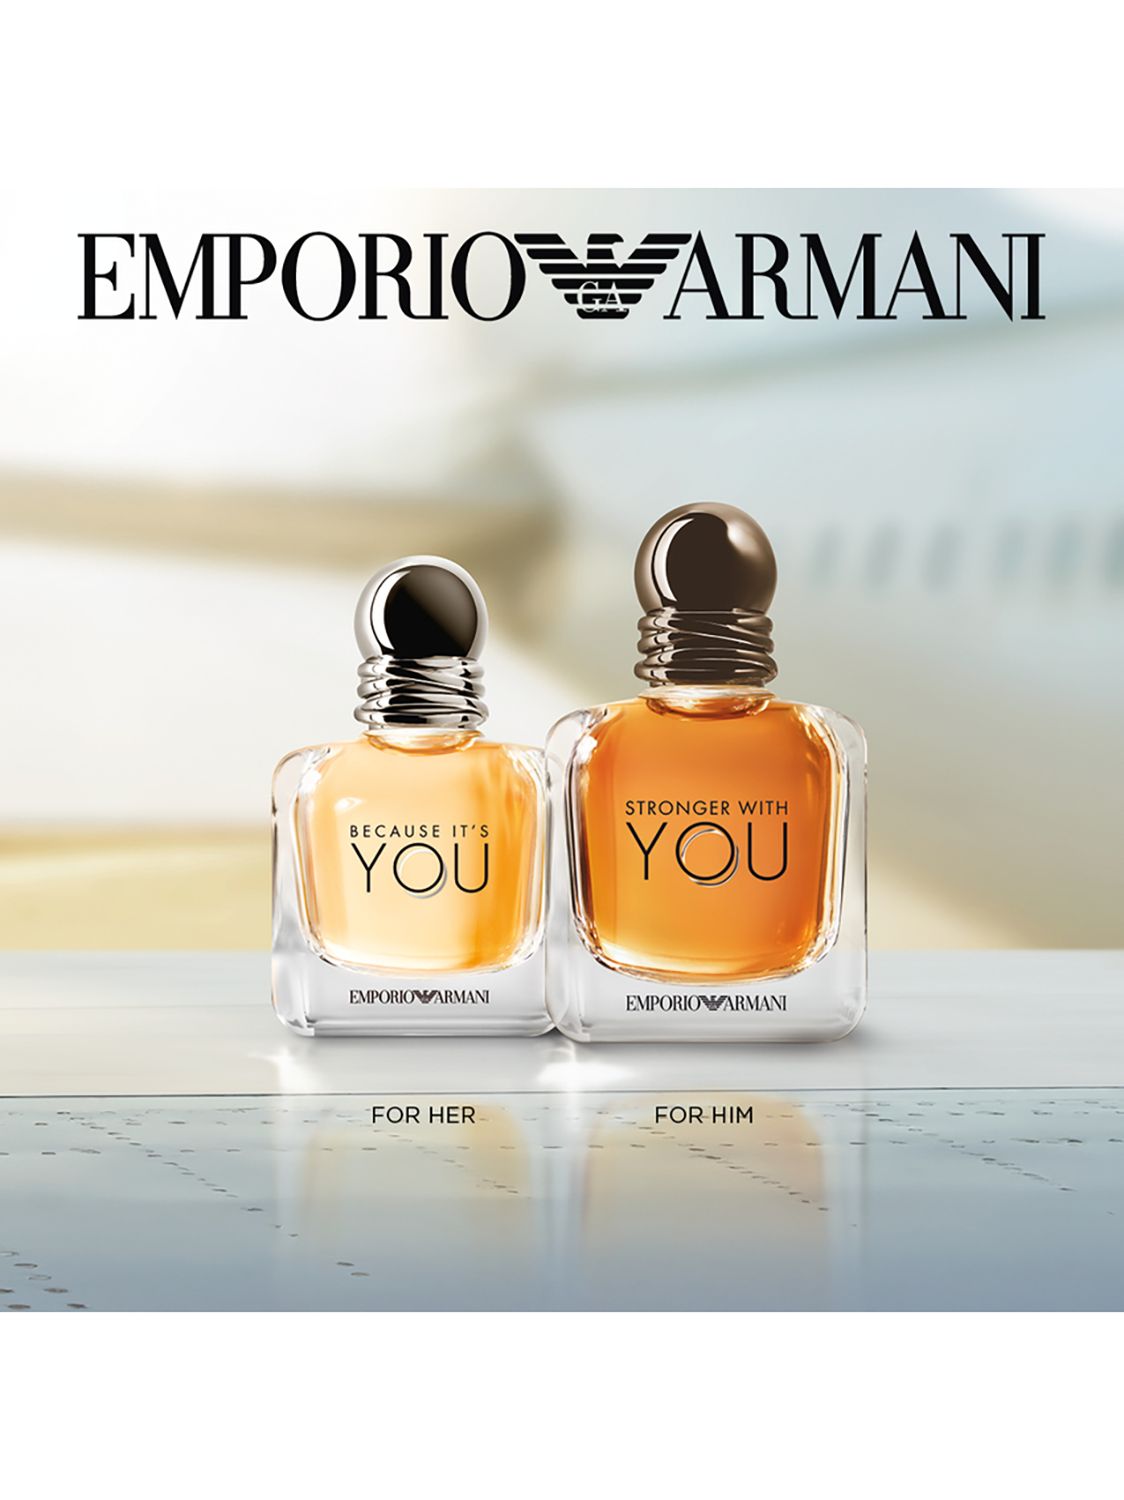 giorgio armani latest perfume